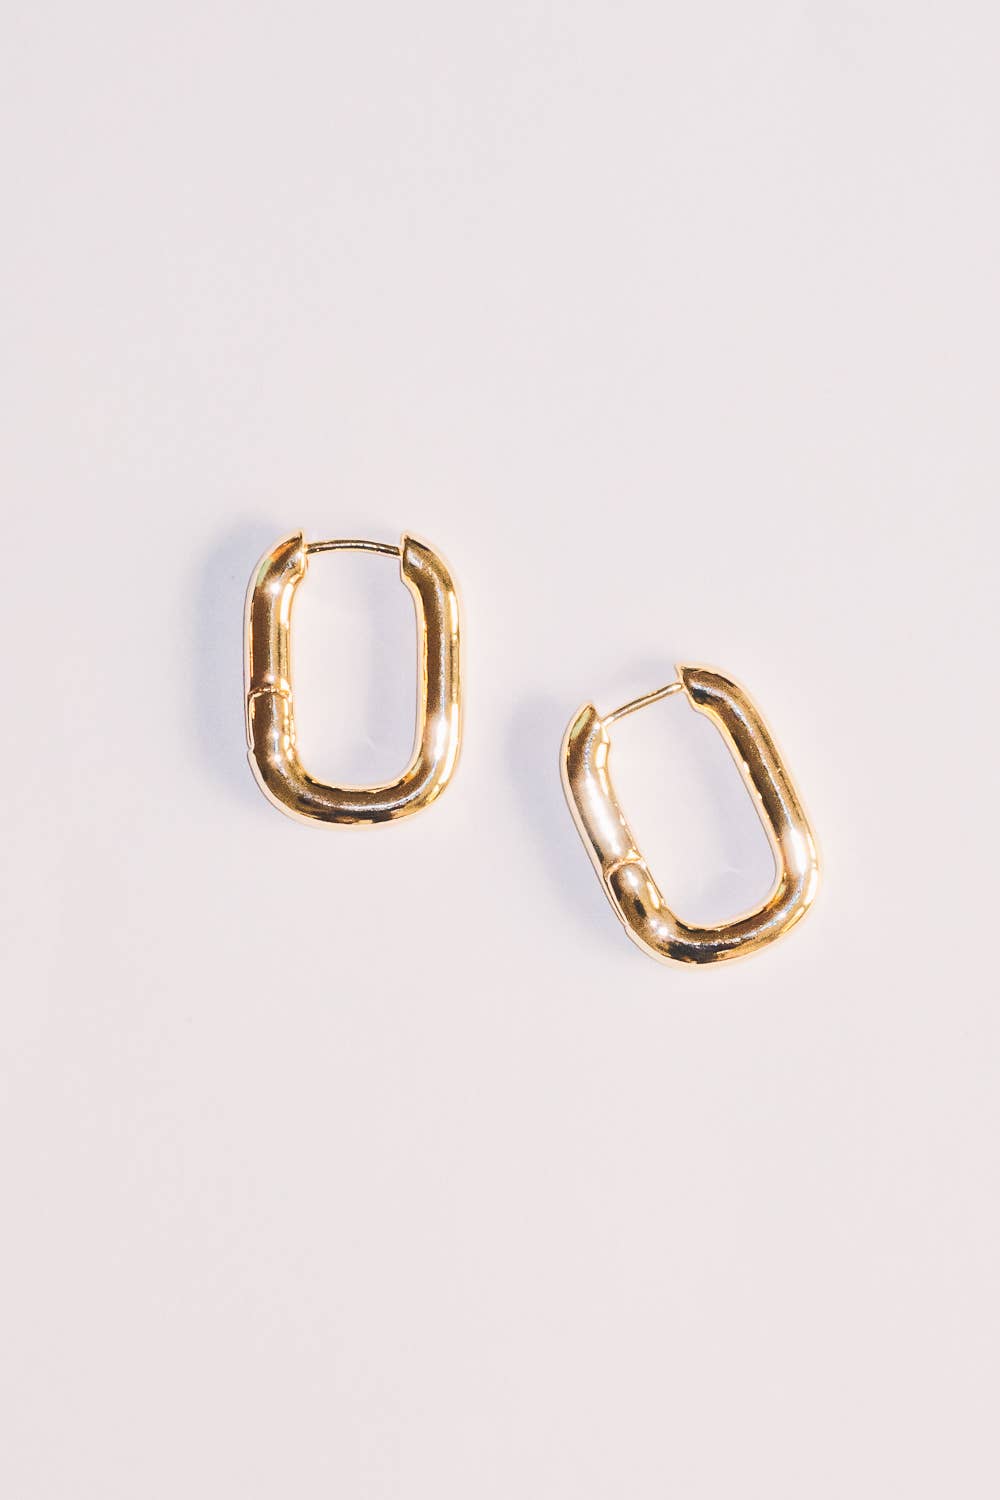 Janna Conner - Addie Gold Huggie Hoop Earrings | 18k Gold Plating